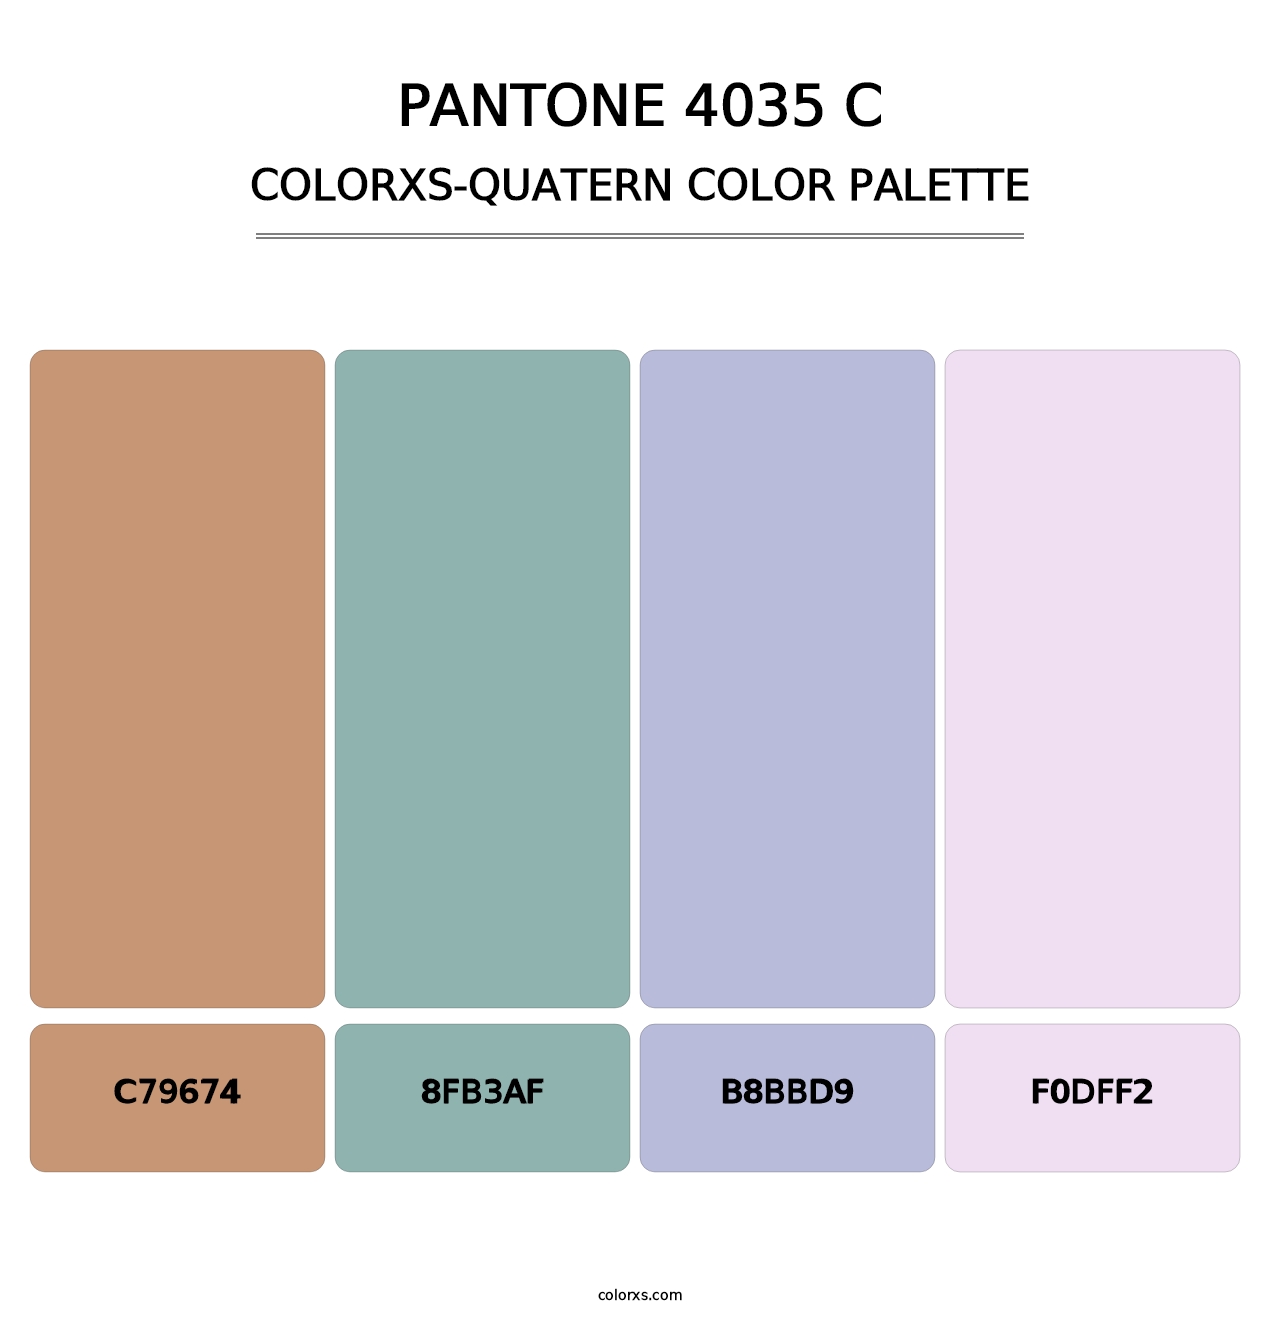 PANTONE 4035 C - Colorxs Quatern Palette